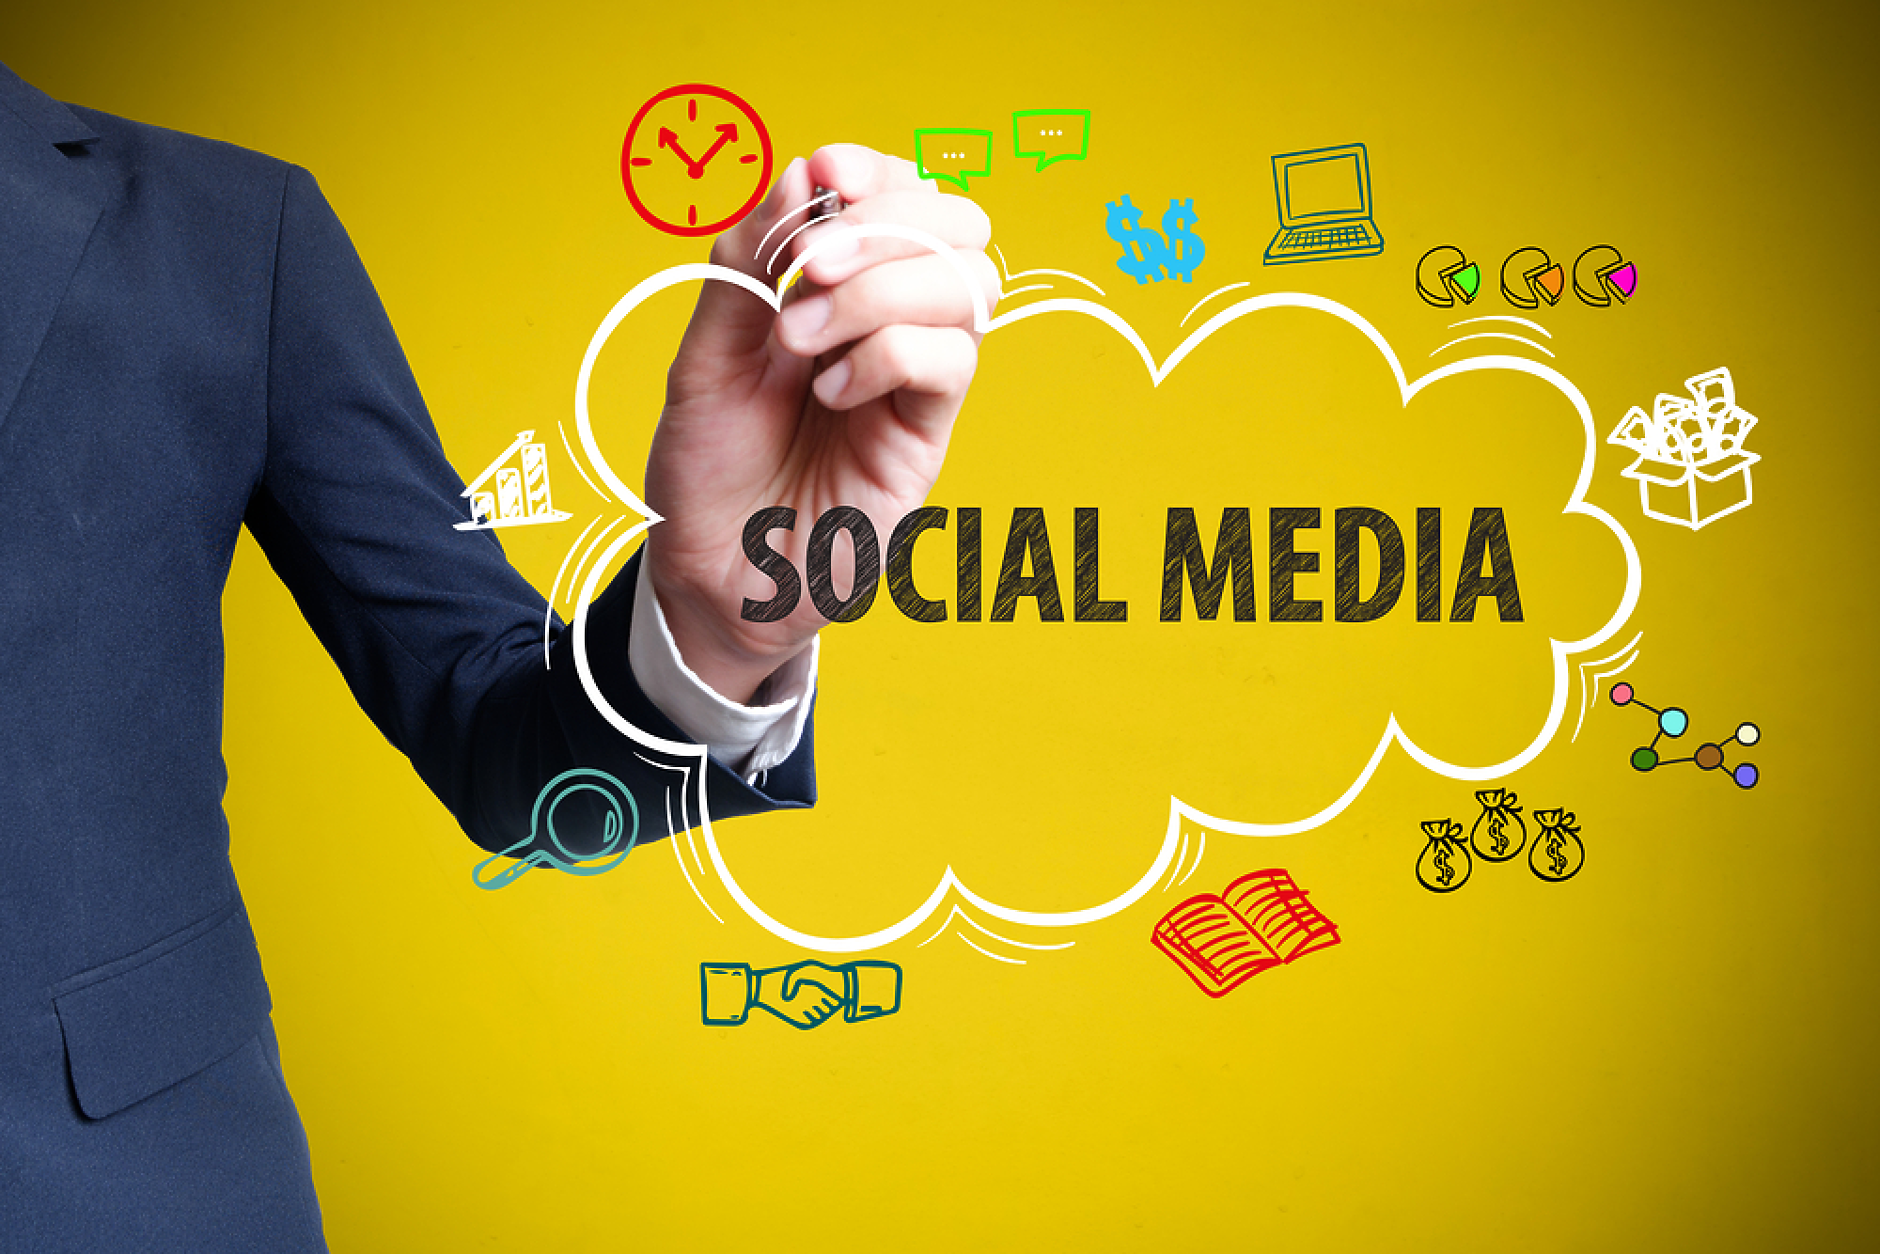 Първи стъпки за овладяване на социалните медии от малкия бизнес (Инфографика)